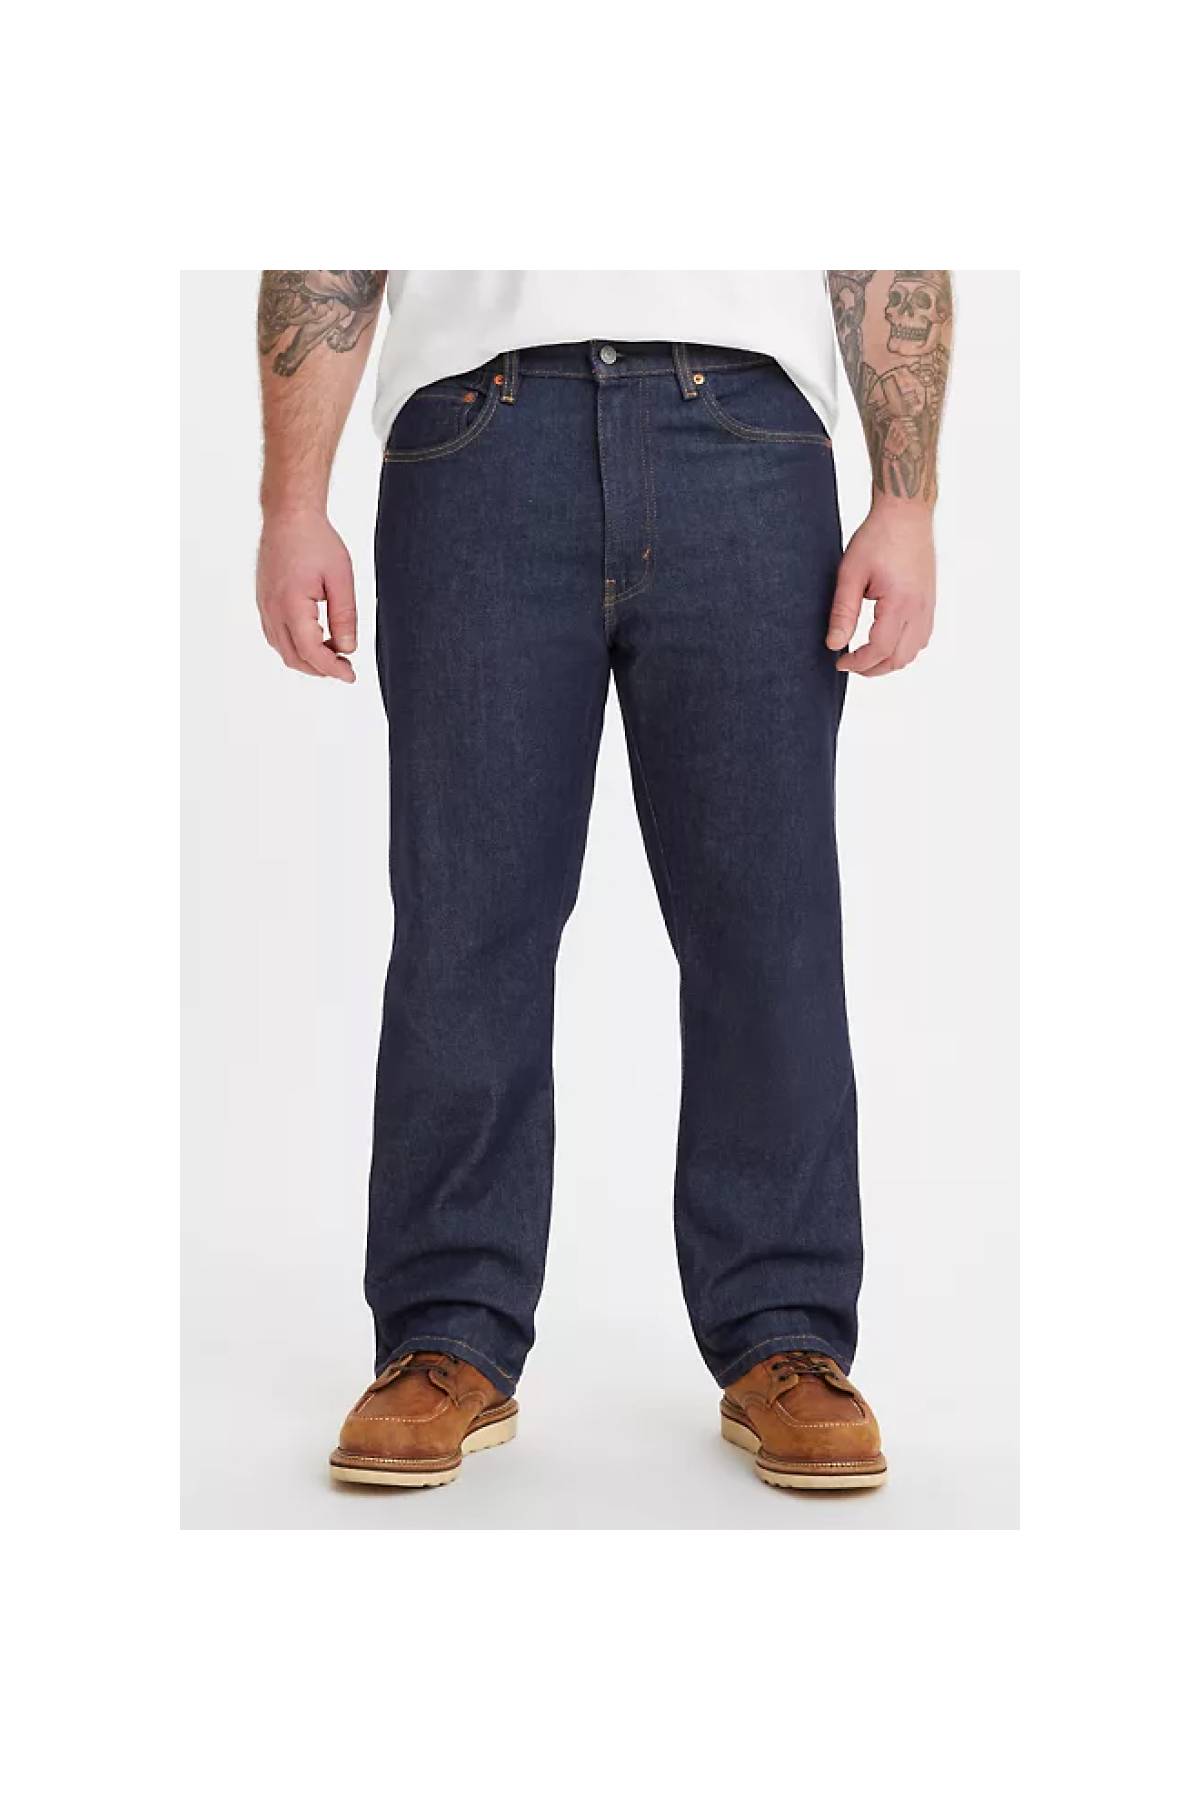 Quần jeans nam Levis LV-US-J06 Slim Fit Men Jeans